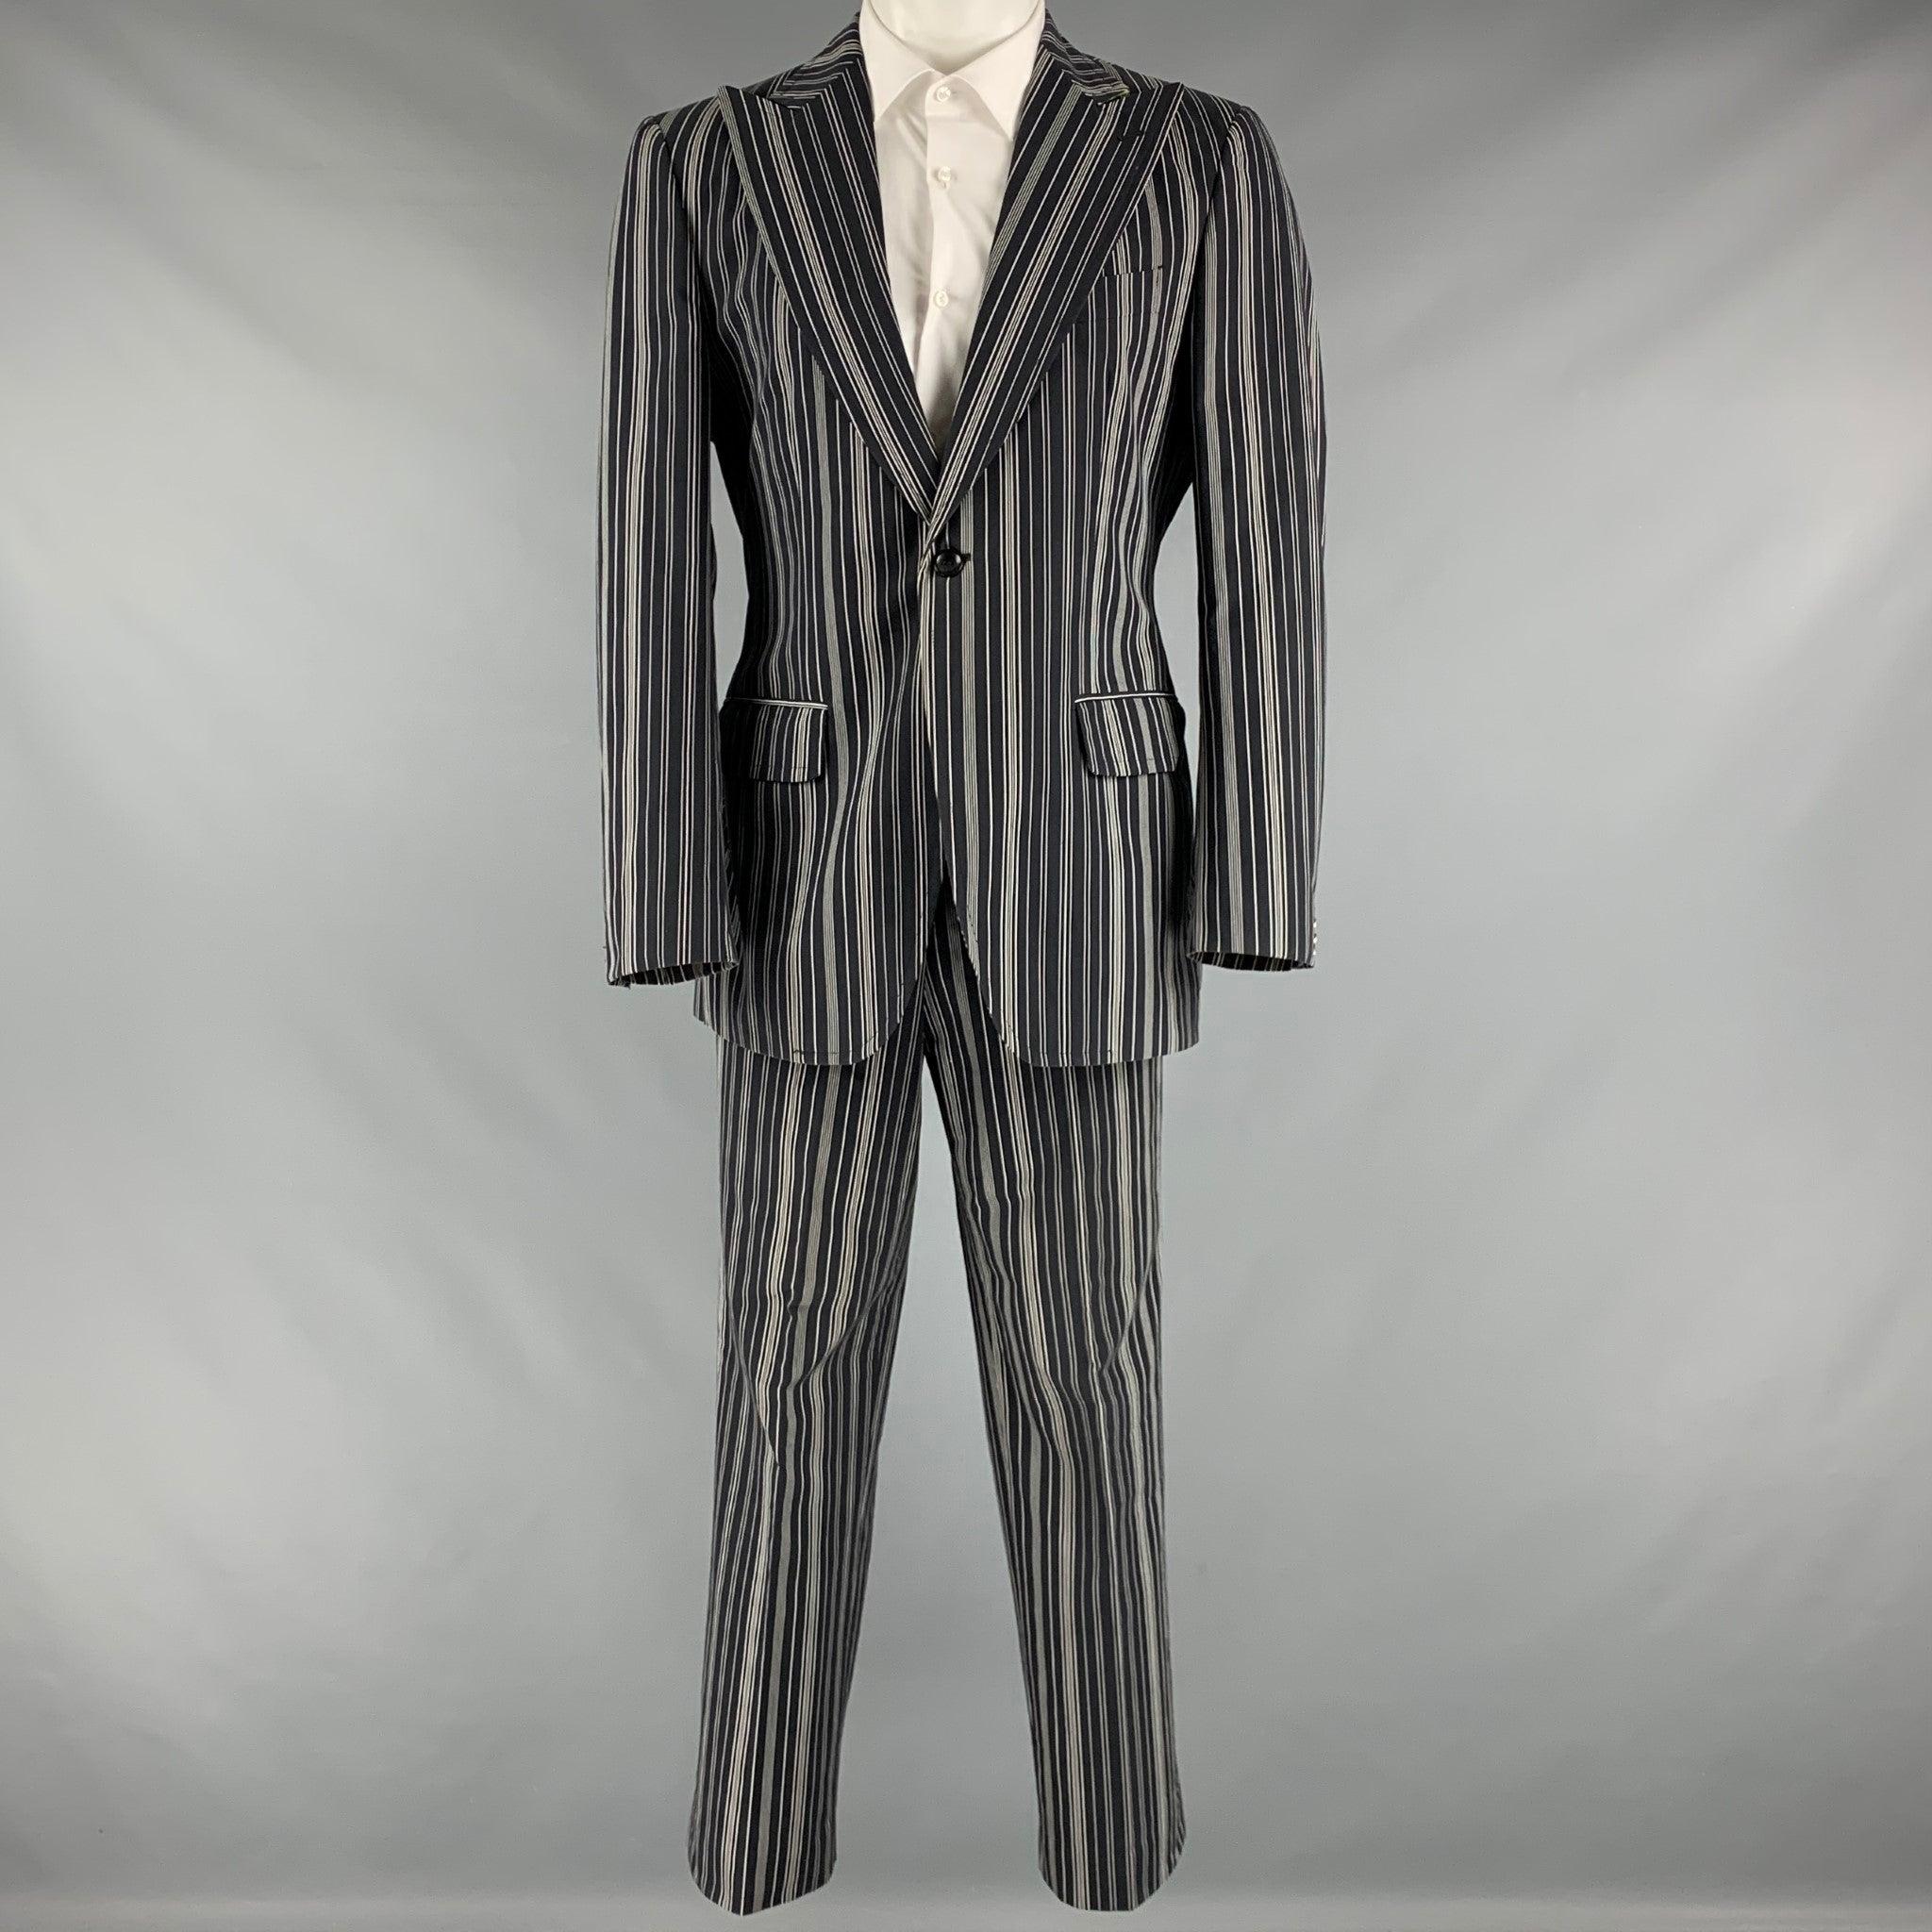 Le costume ETRO se compose d'un tissu de coton rayé noir et blanc, d'une doublure complète et d'un manteau de sport à un seul boutonnage avec revers en pointe et d'un pantalon assorti à devant plat. Excellent état d'origine. 

Marqué :   50 